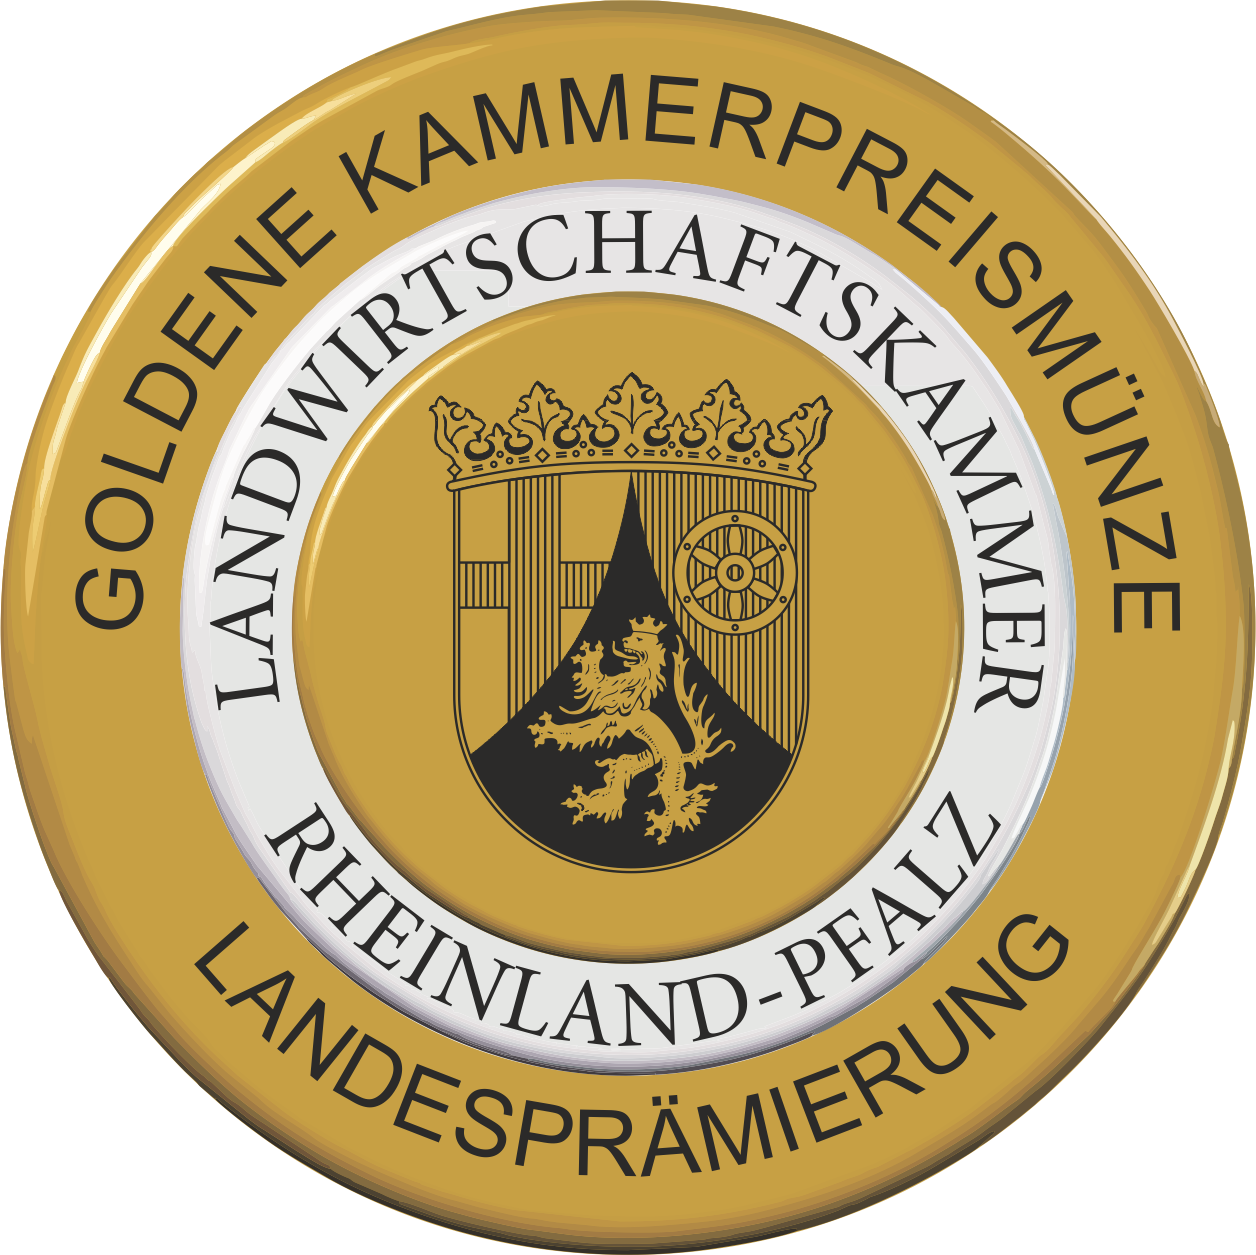 Bild-Auszeichnung: Goldene Kammerpreismünze